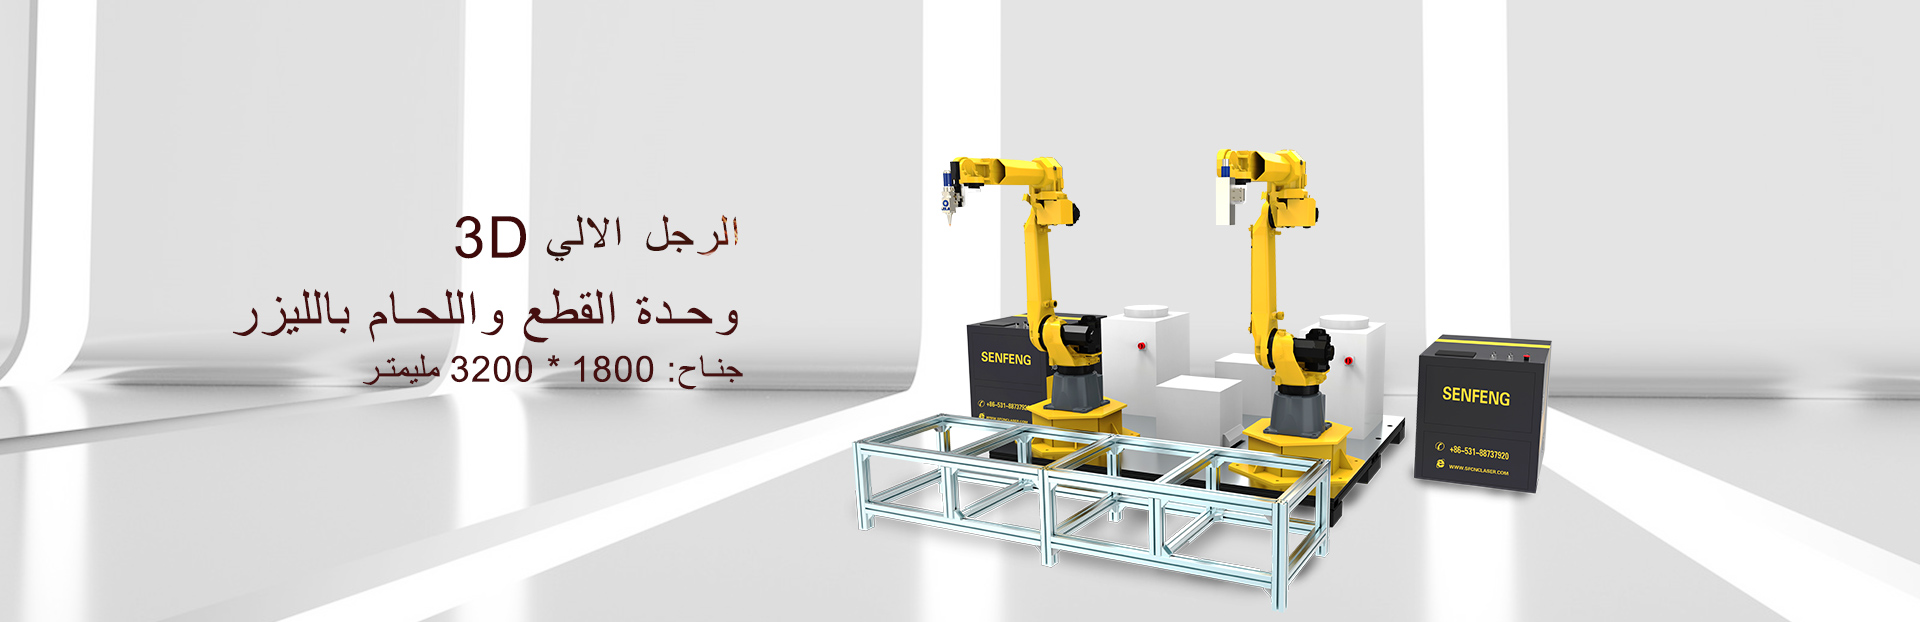  آلة لحام وقطع الروبوت الالي 3Dللحام وقطع المعادن بالليزر 